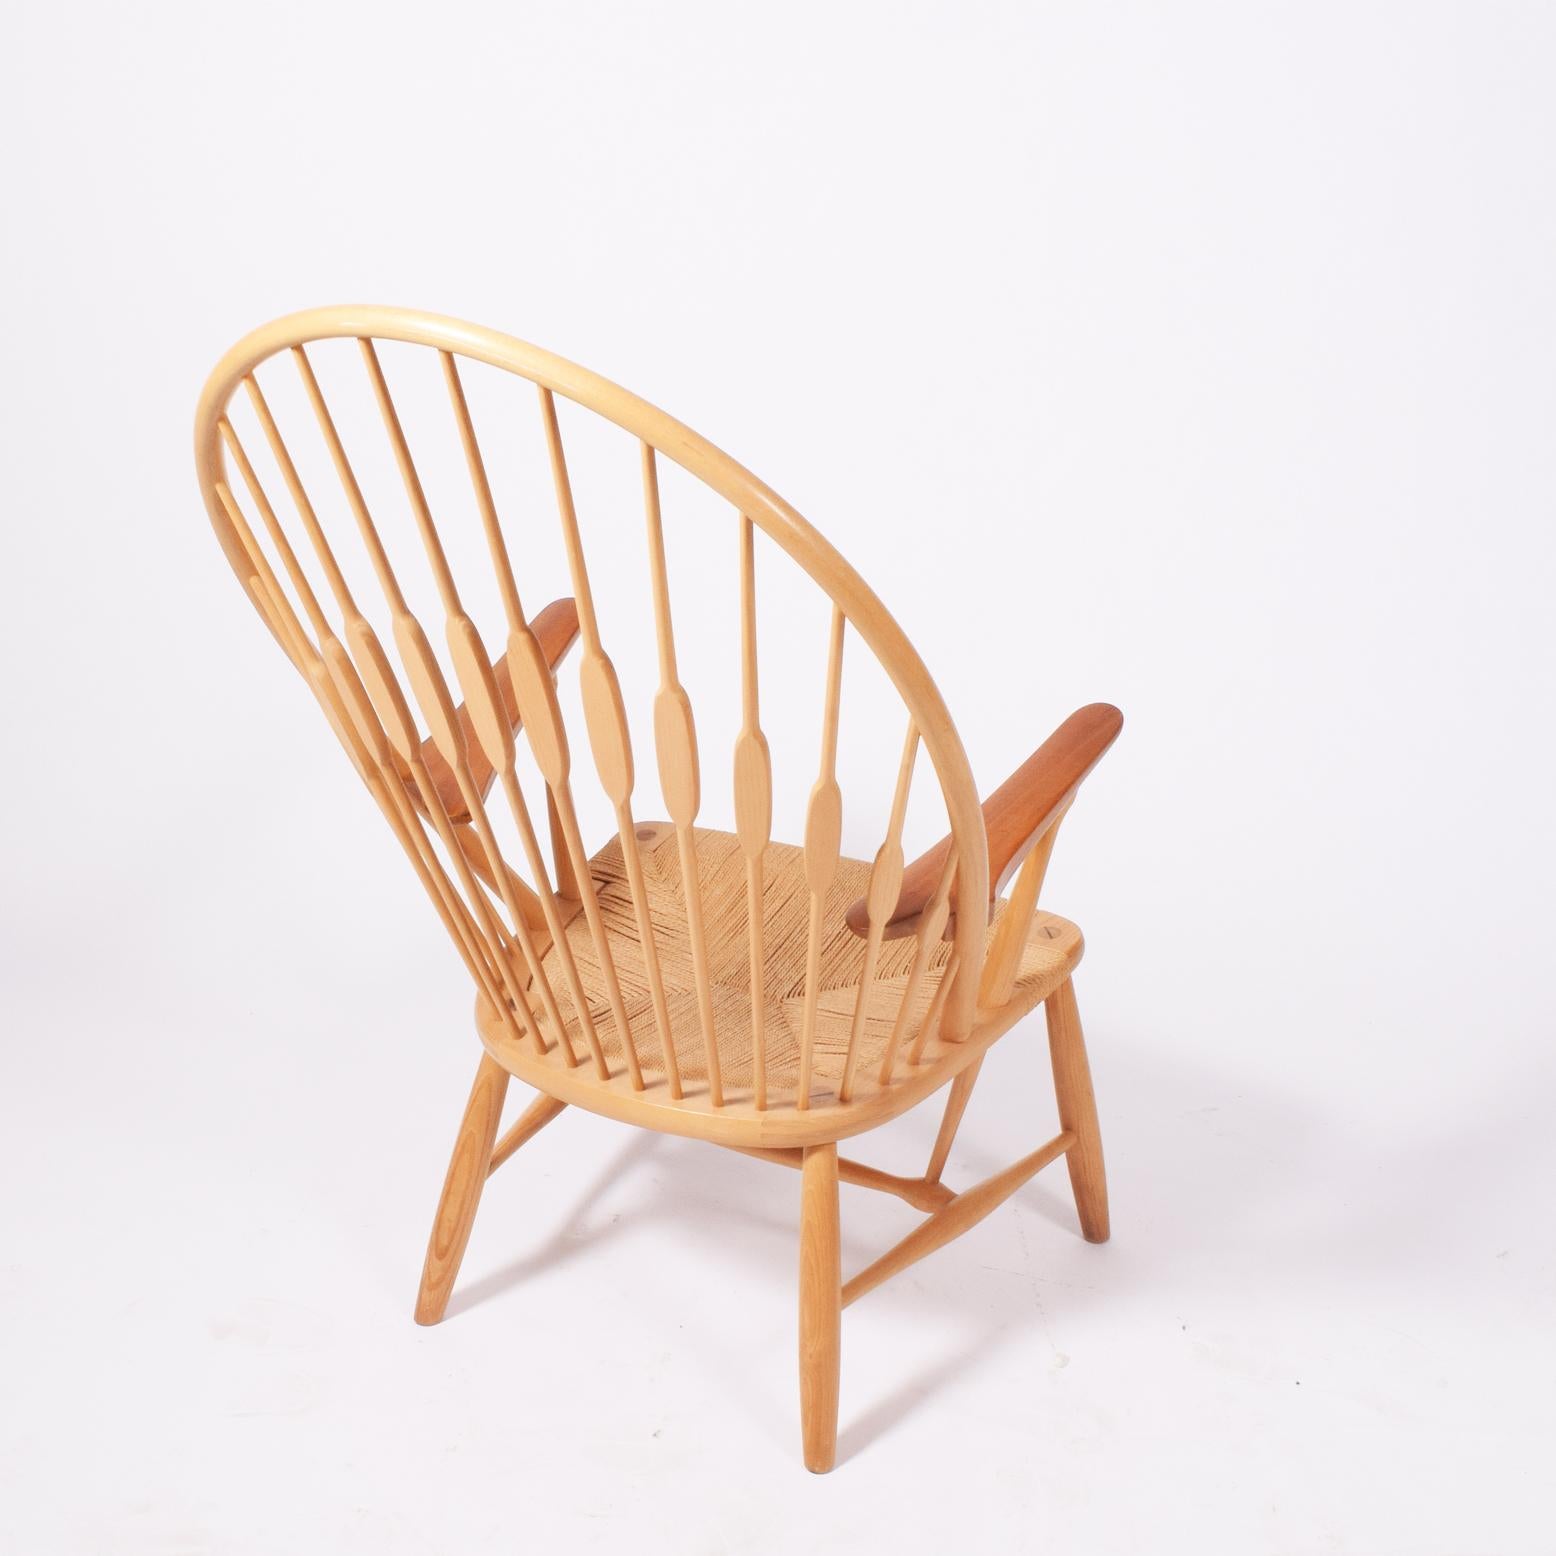 Peacock Chair by Hans Wegner for Johannes Hansen (Skandinavische Moderne)